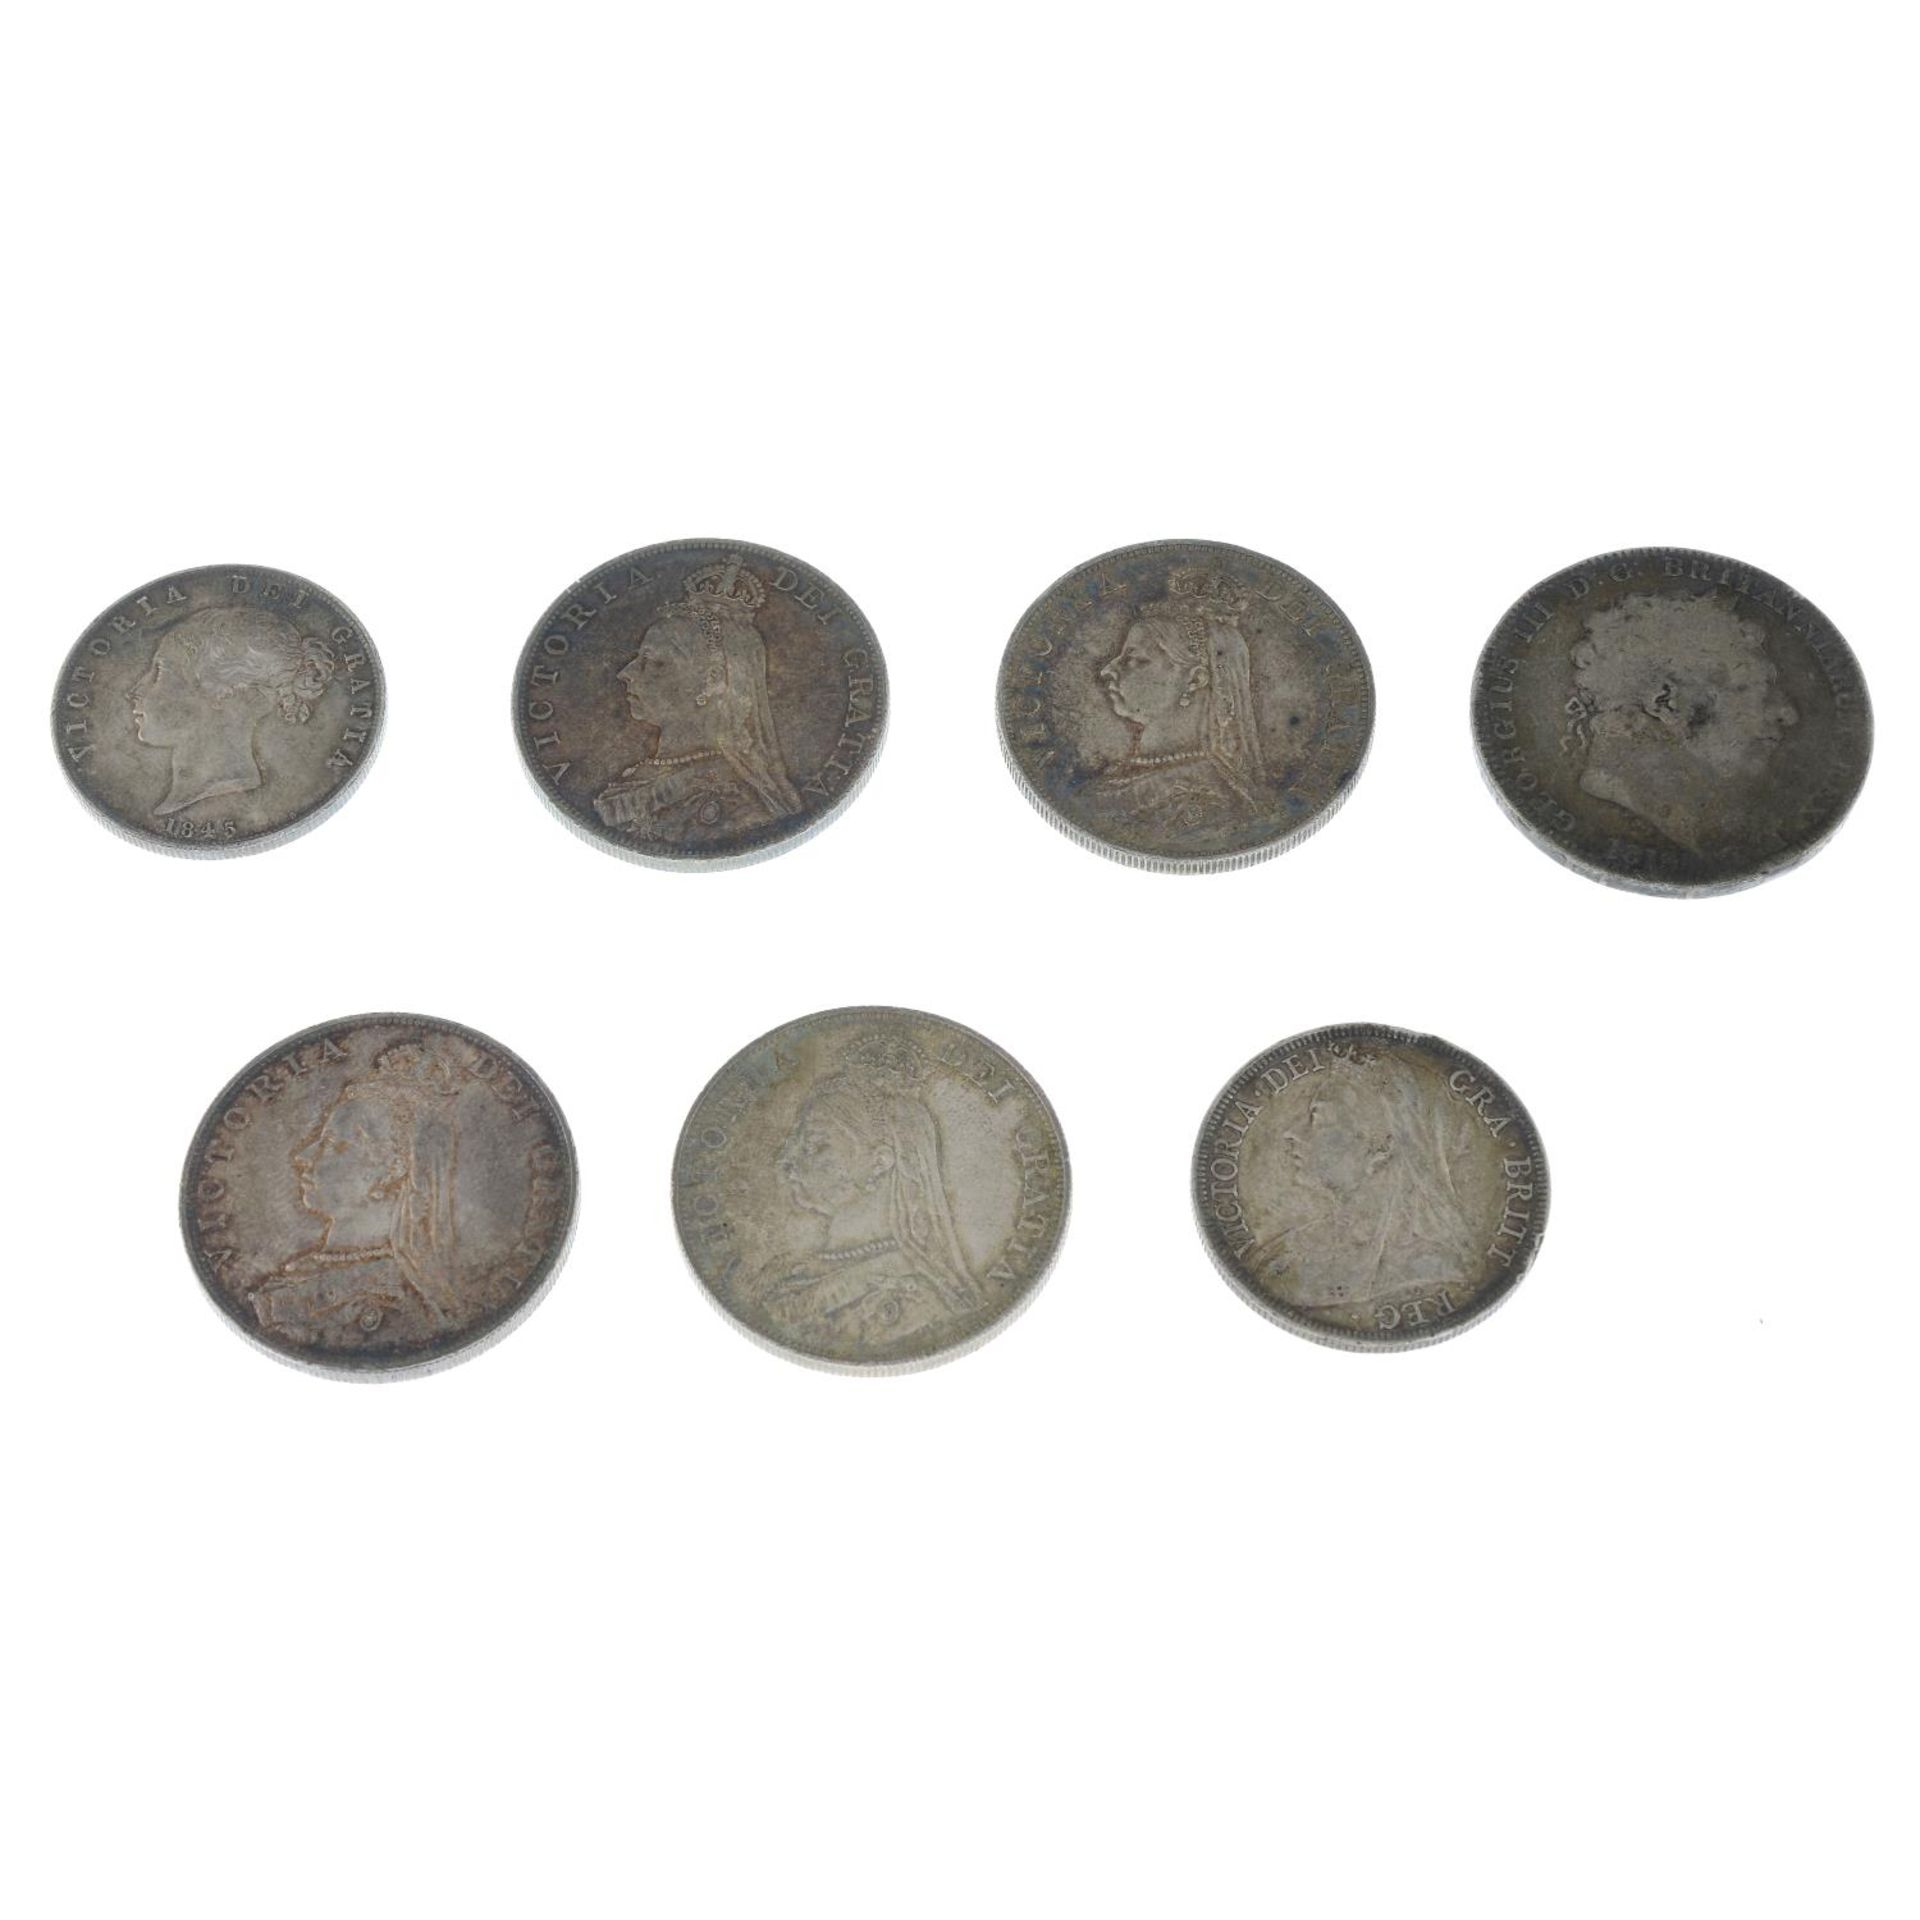 British silver coins (7),